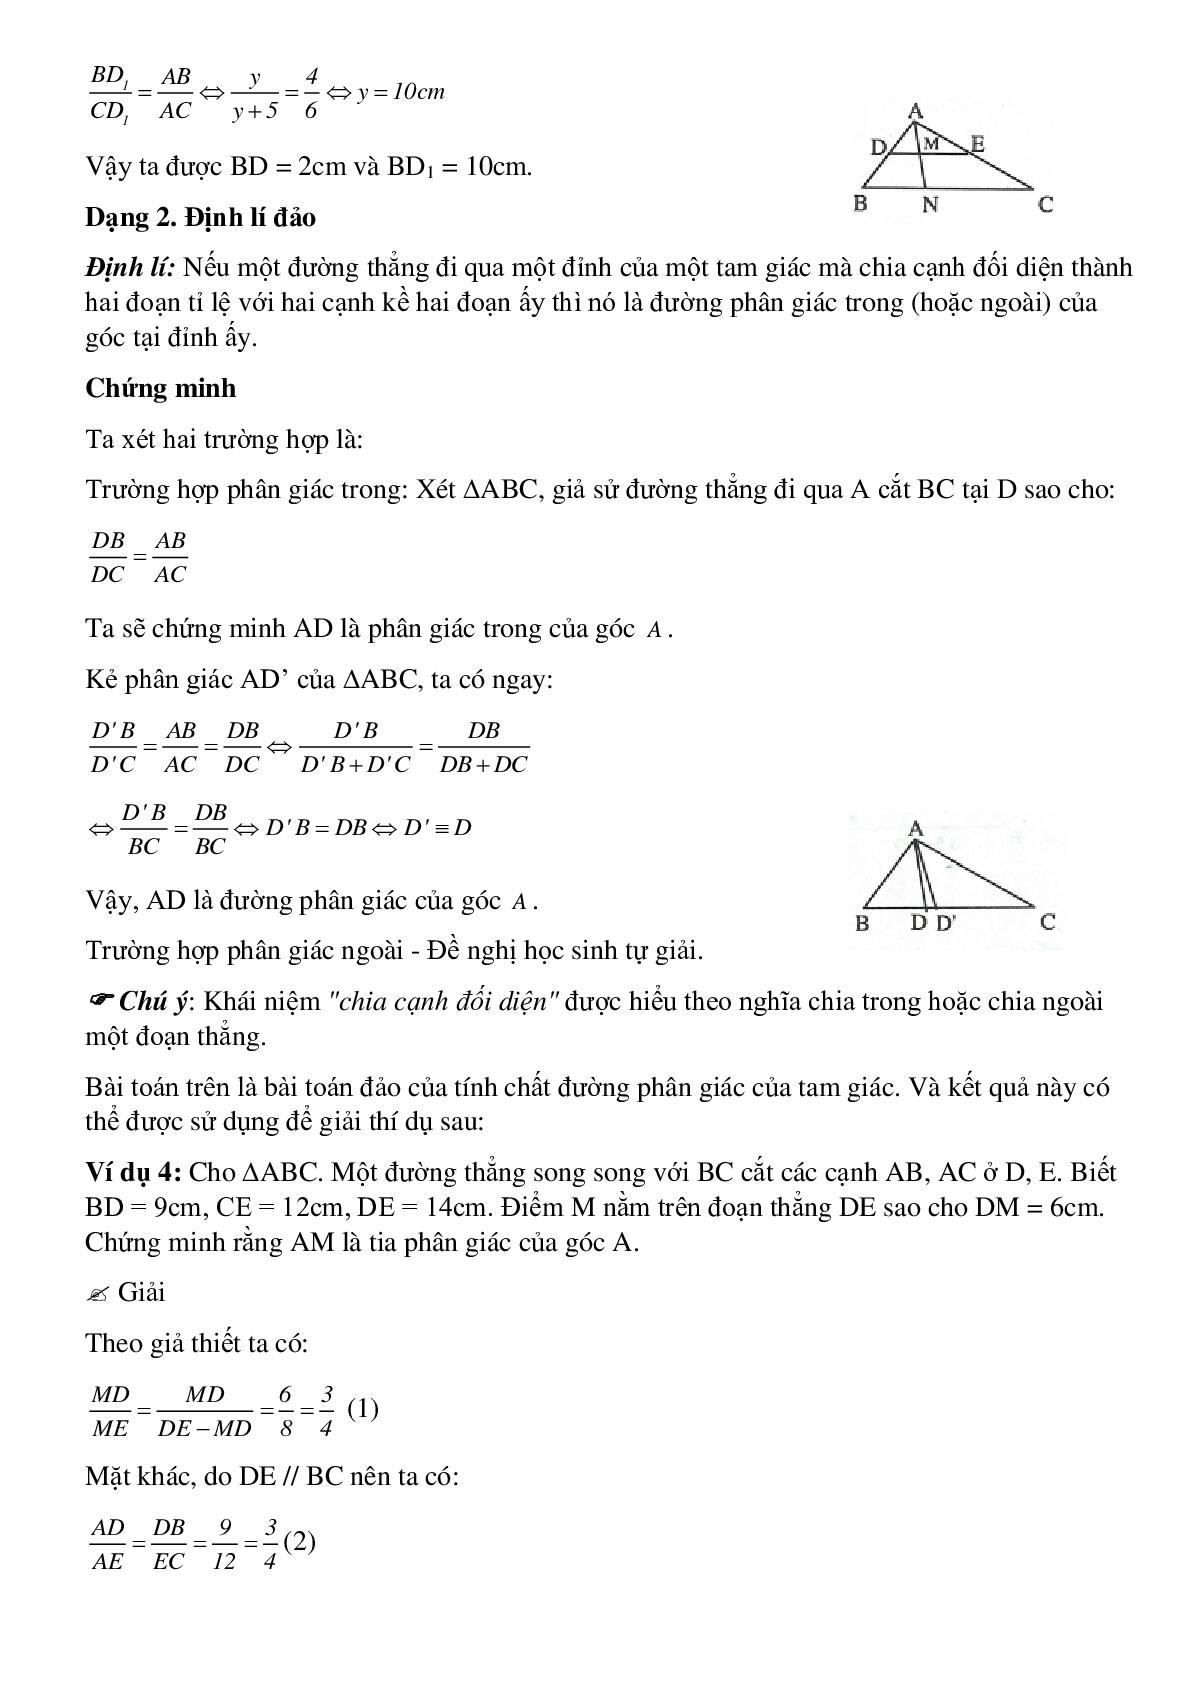 Phương pháp giải và bài tập về Tính chất đường phân giác của tam giác chọn lọc (trang 3)